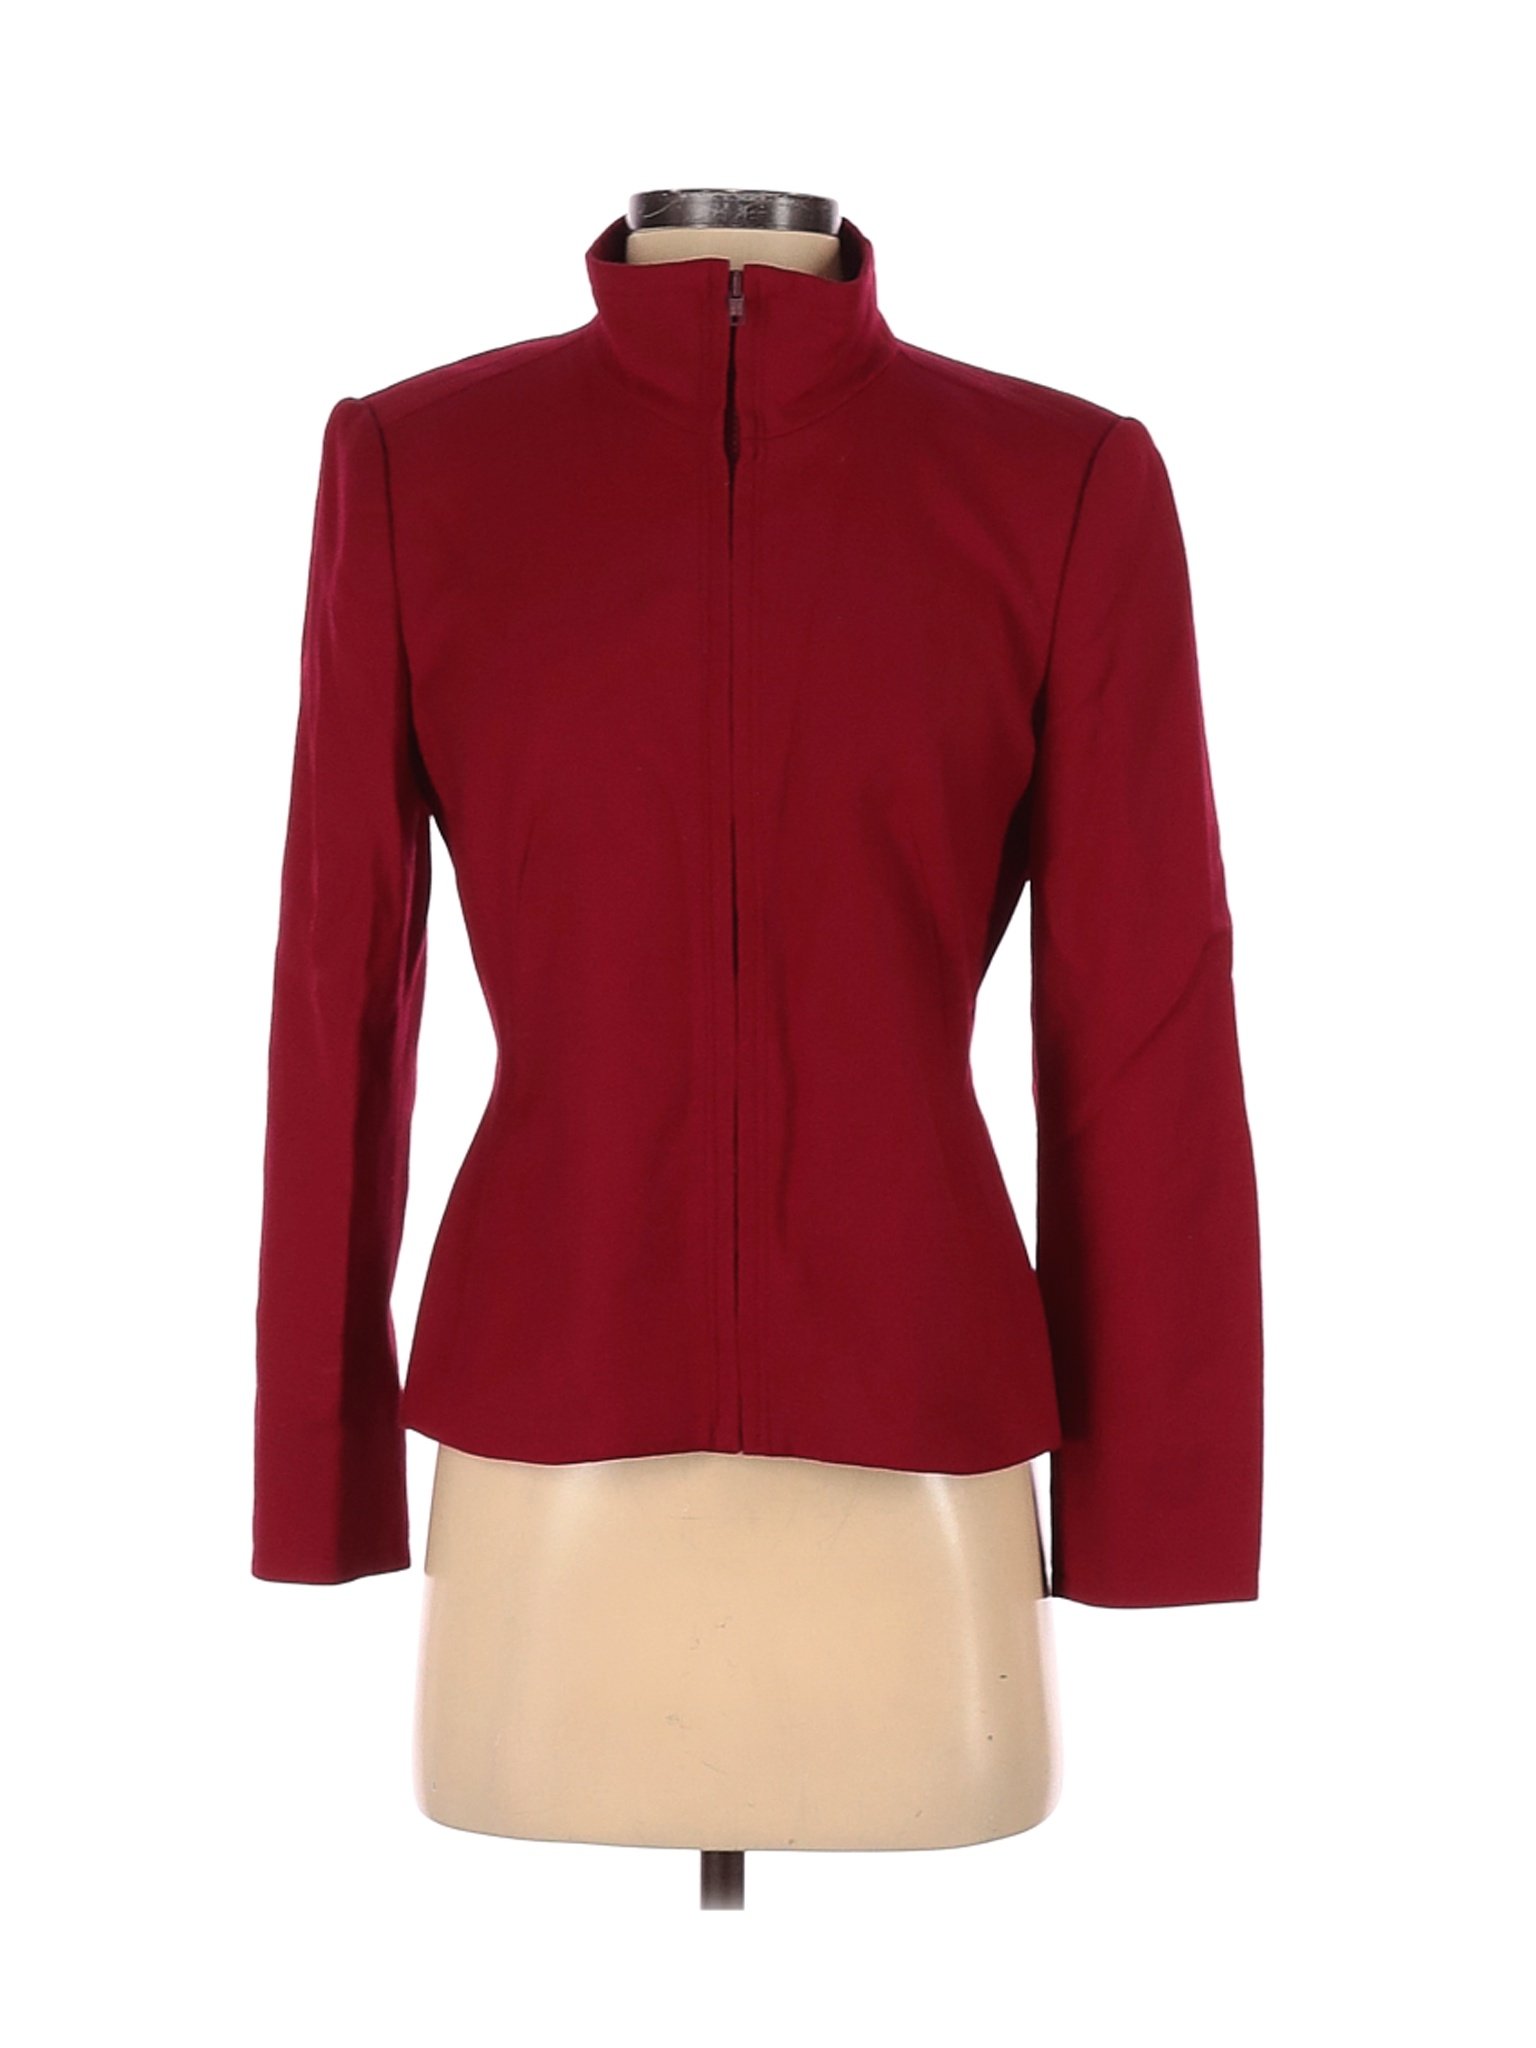 Talbots Women Red Jacket 4 | eBay